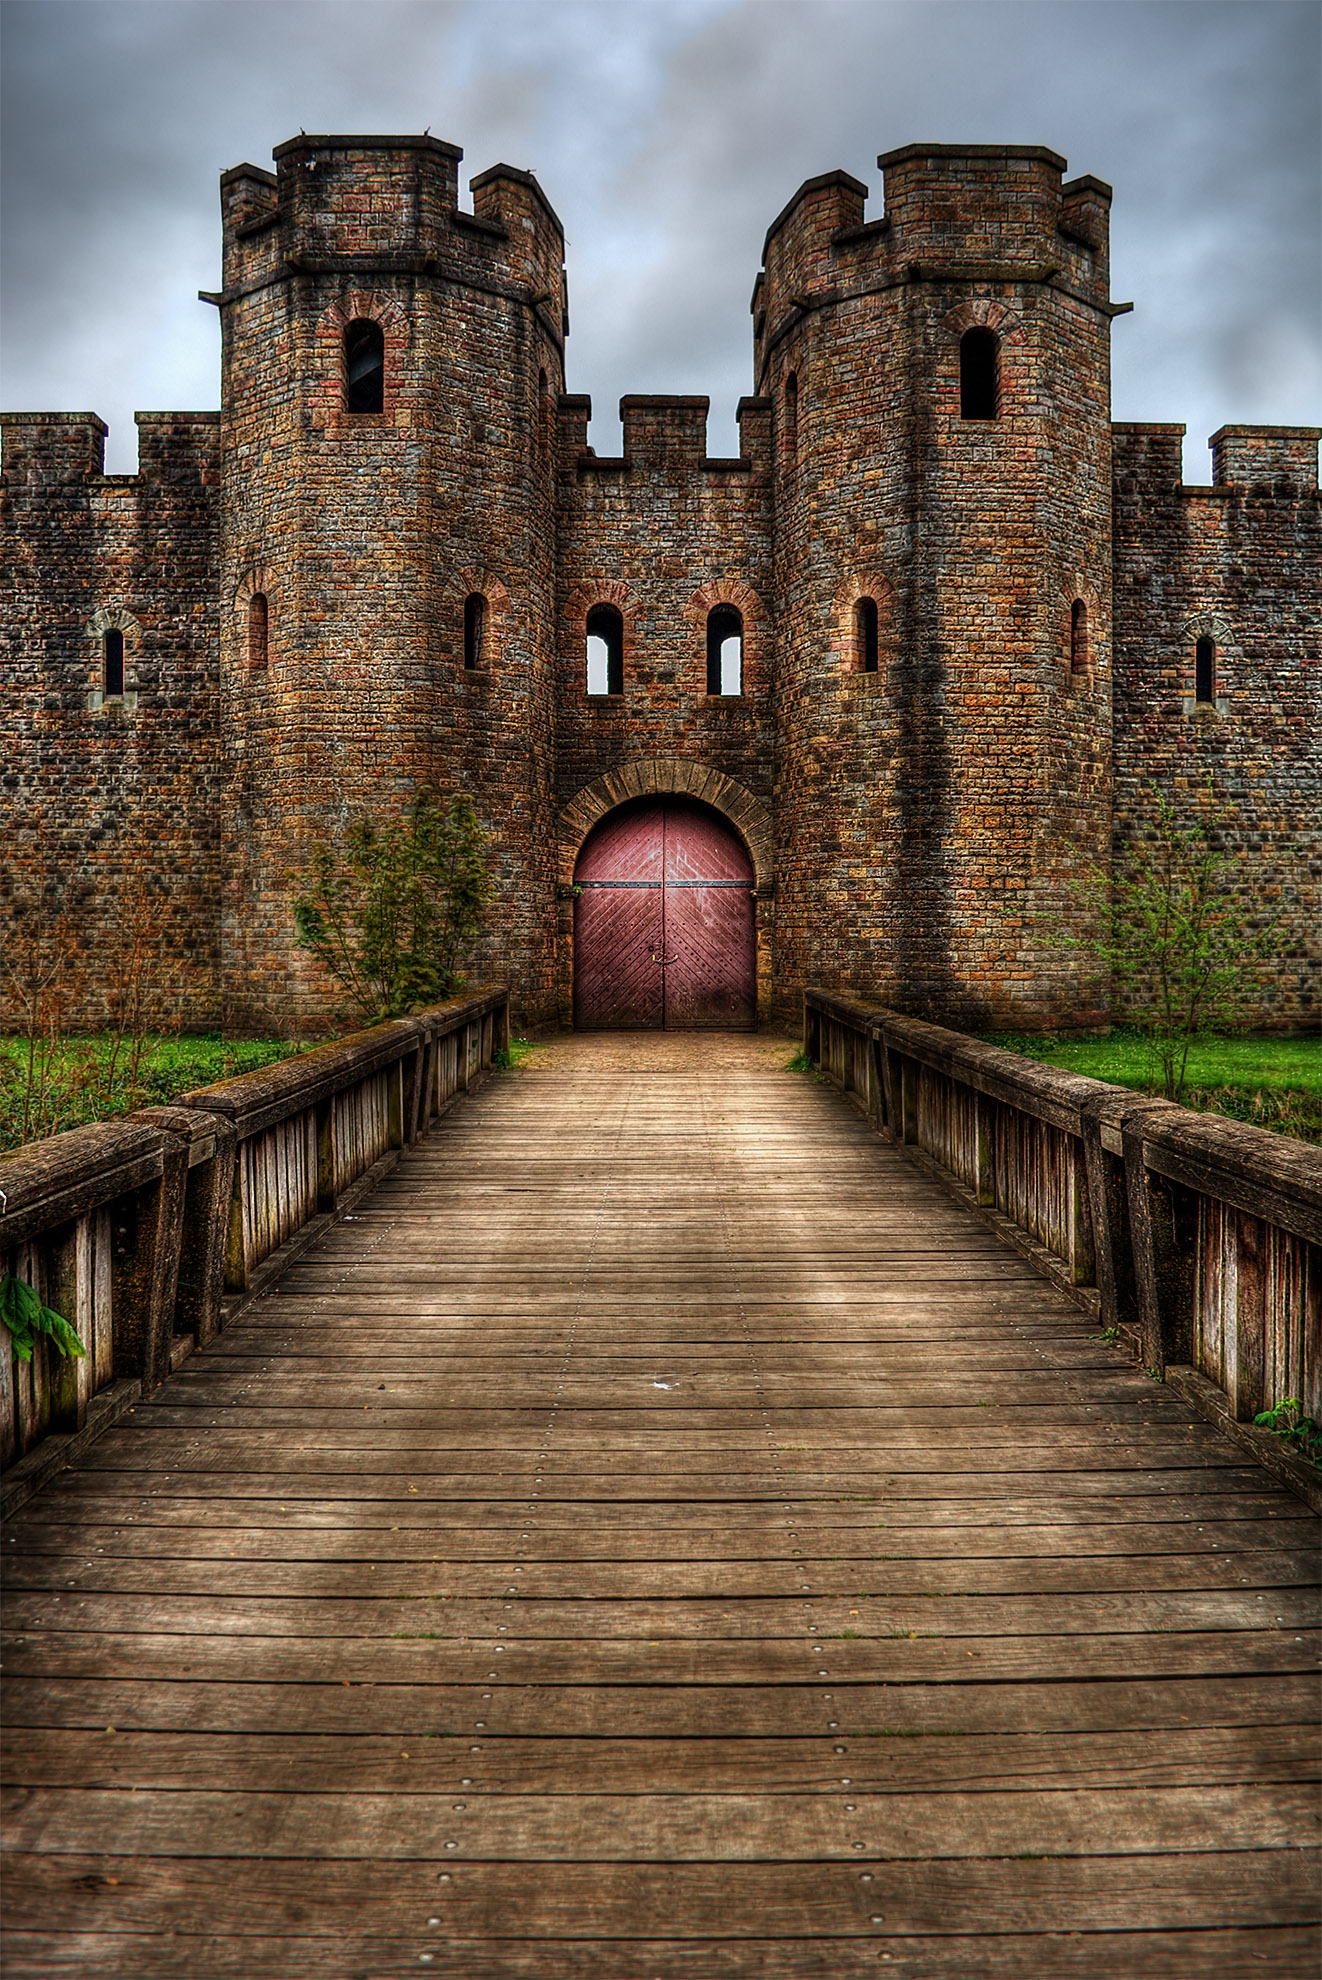 Cardiff Castle HDR by Silvan Bachmann on 500px | Cardiff / Caerdydd ...